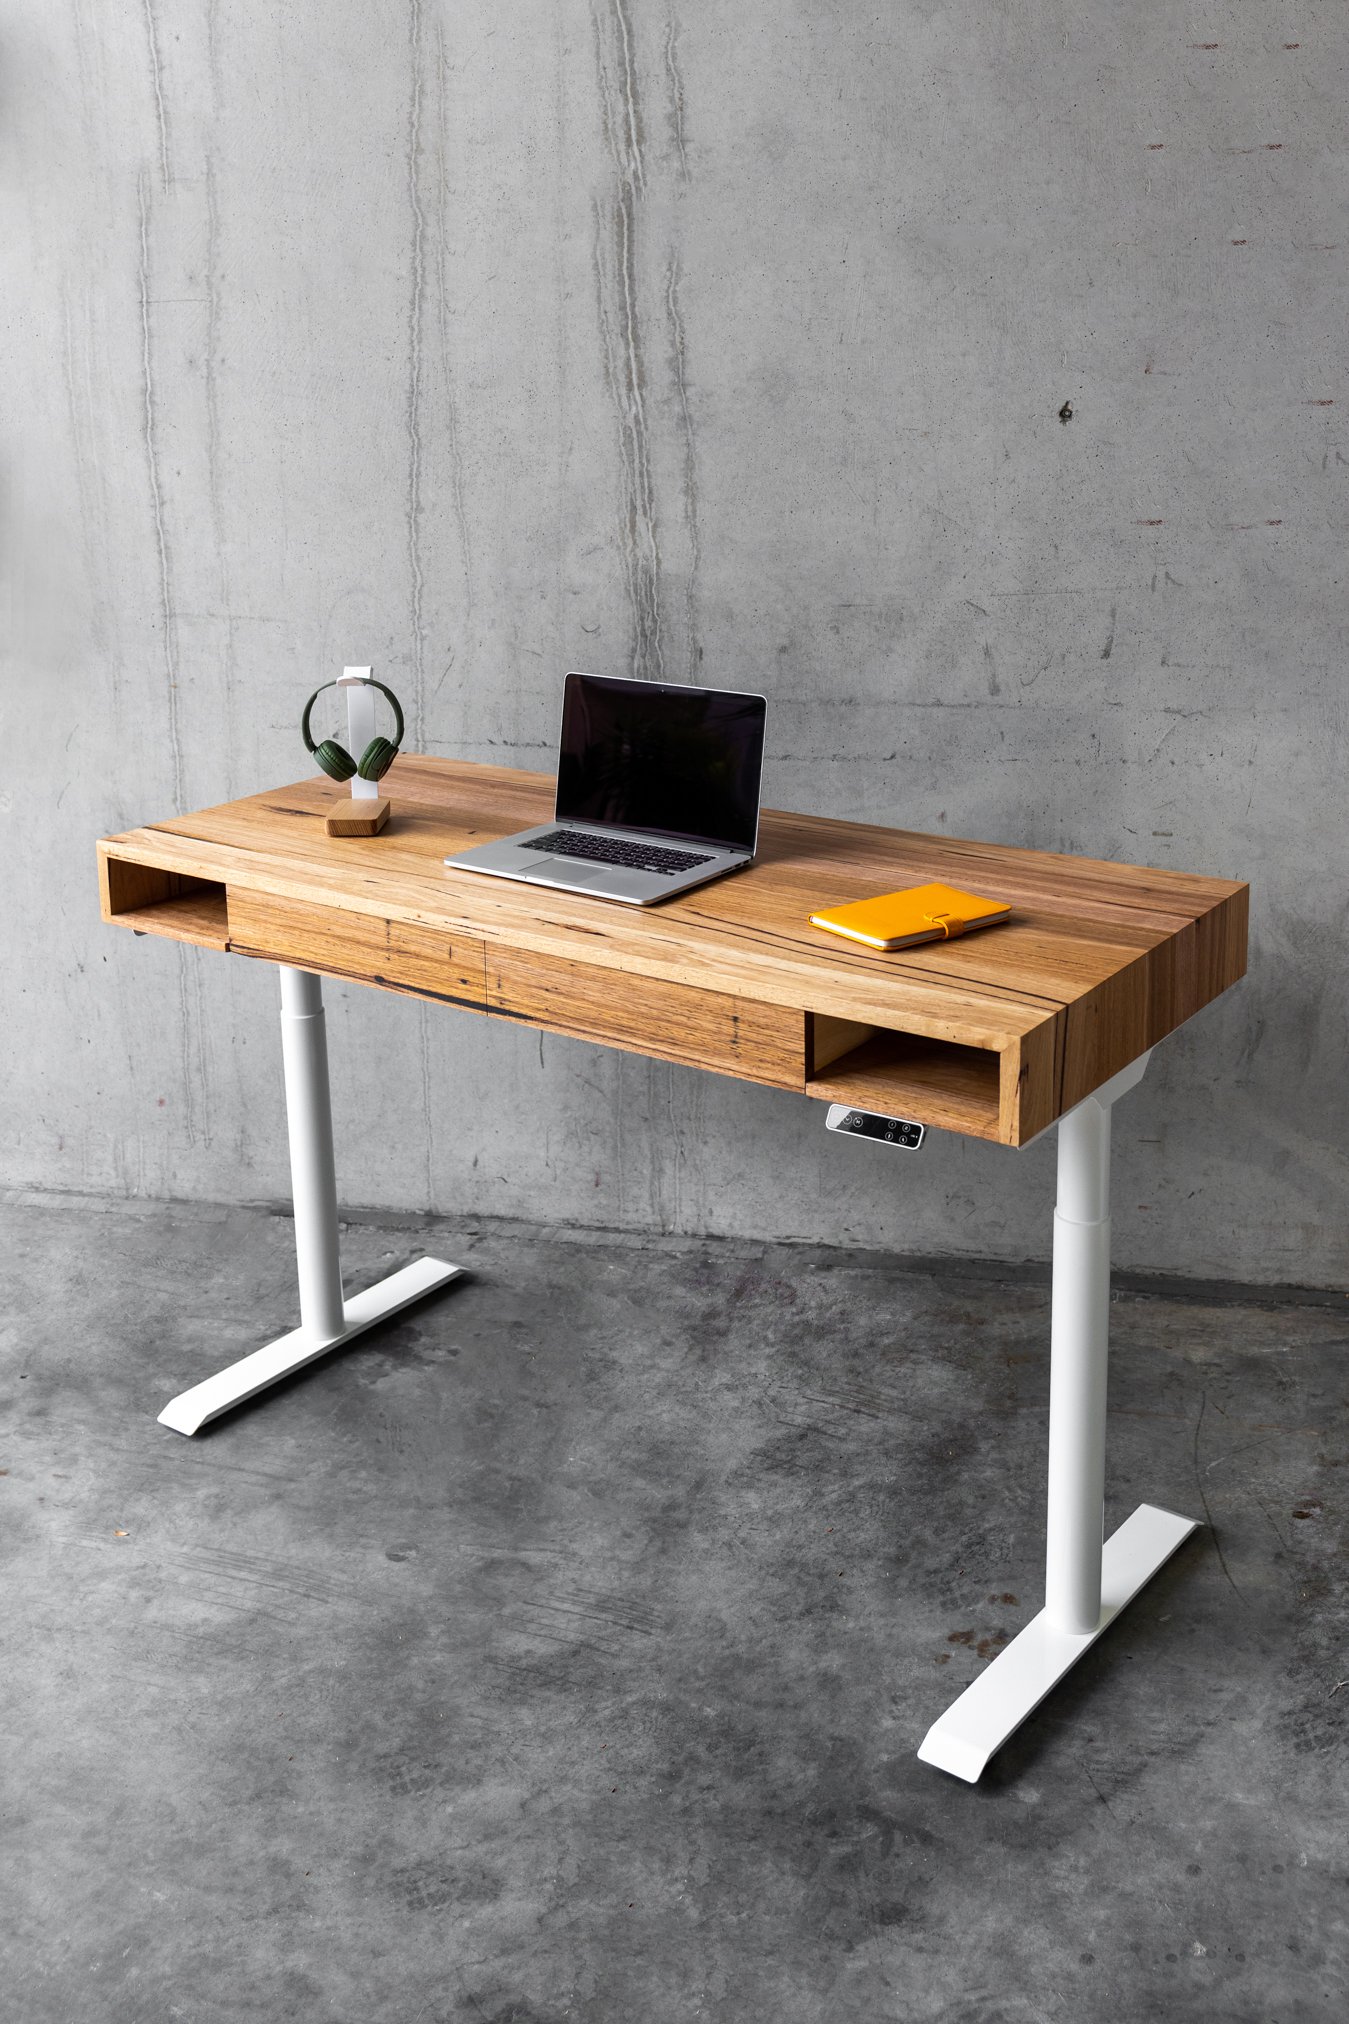 Wooden Desks - Timber Standing Desks - Home Office Desks